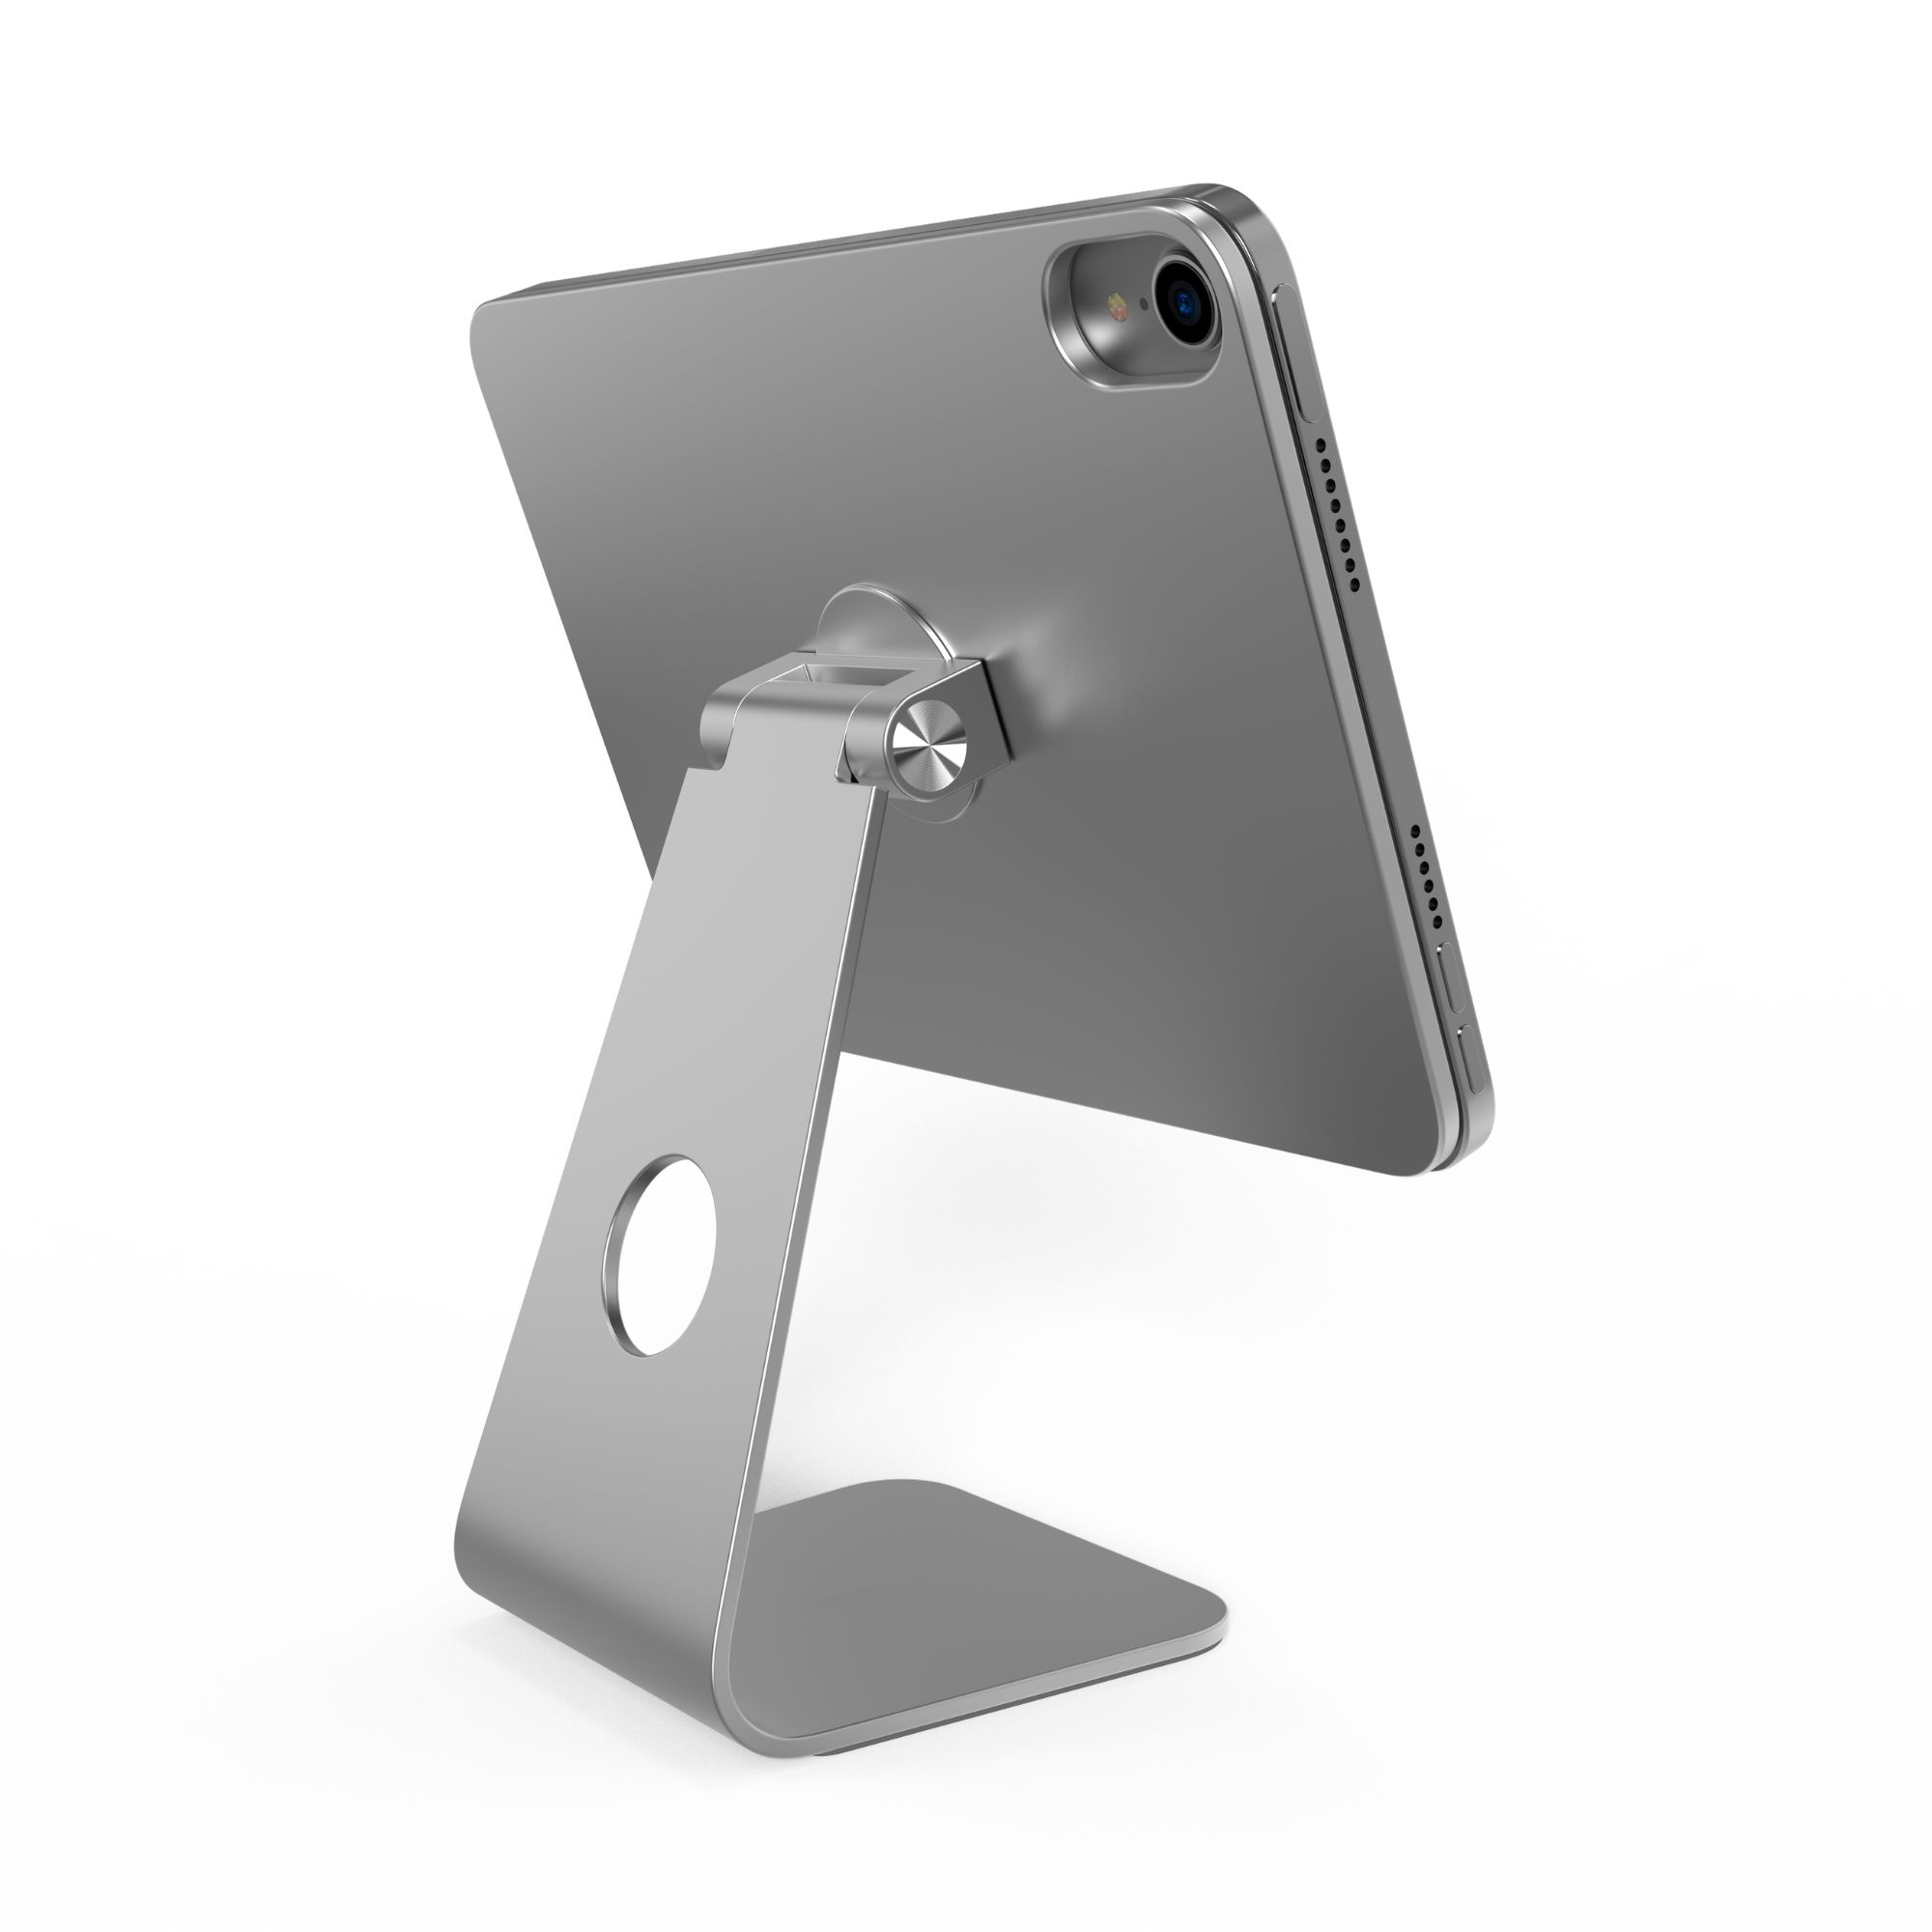 iPad Ständer Halterung für S022 Mini Magnetischer CUBENEST